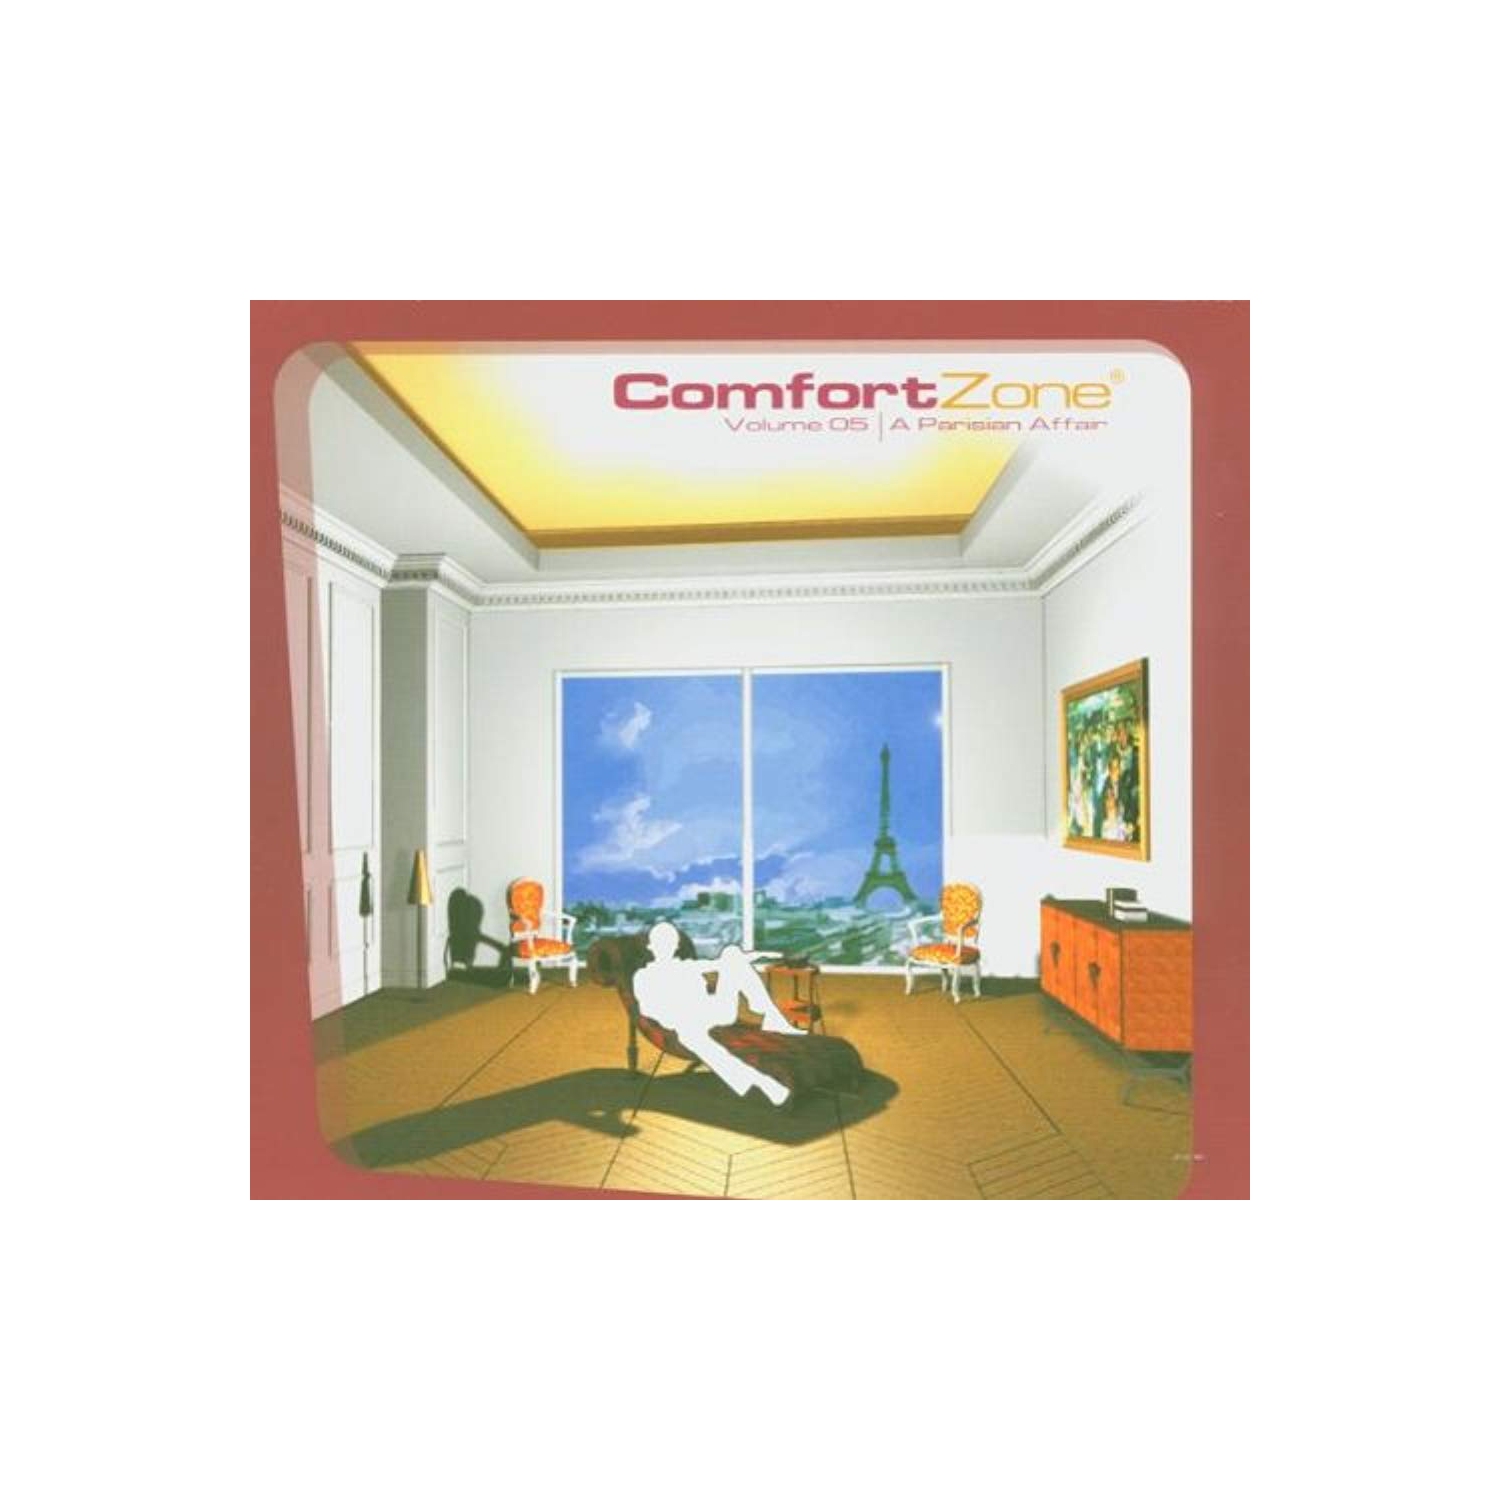 Comfort Zone 5 [Audio CD] Various Artists